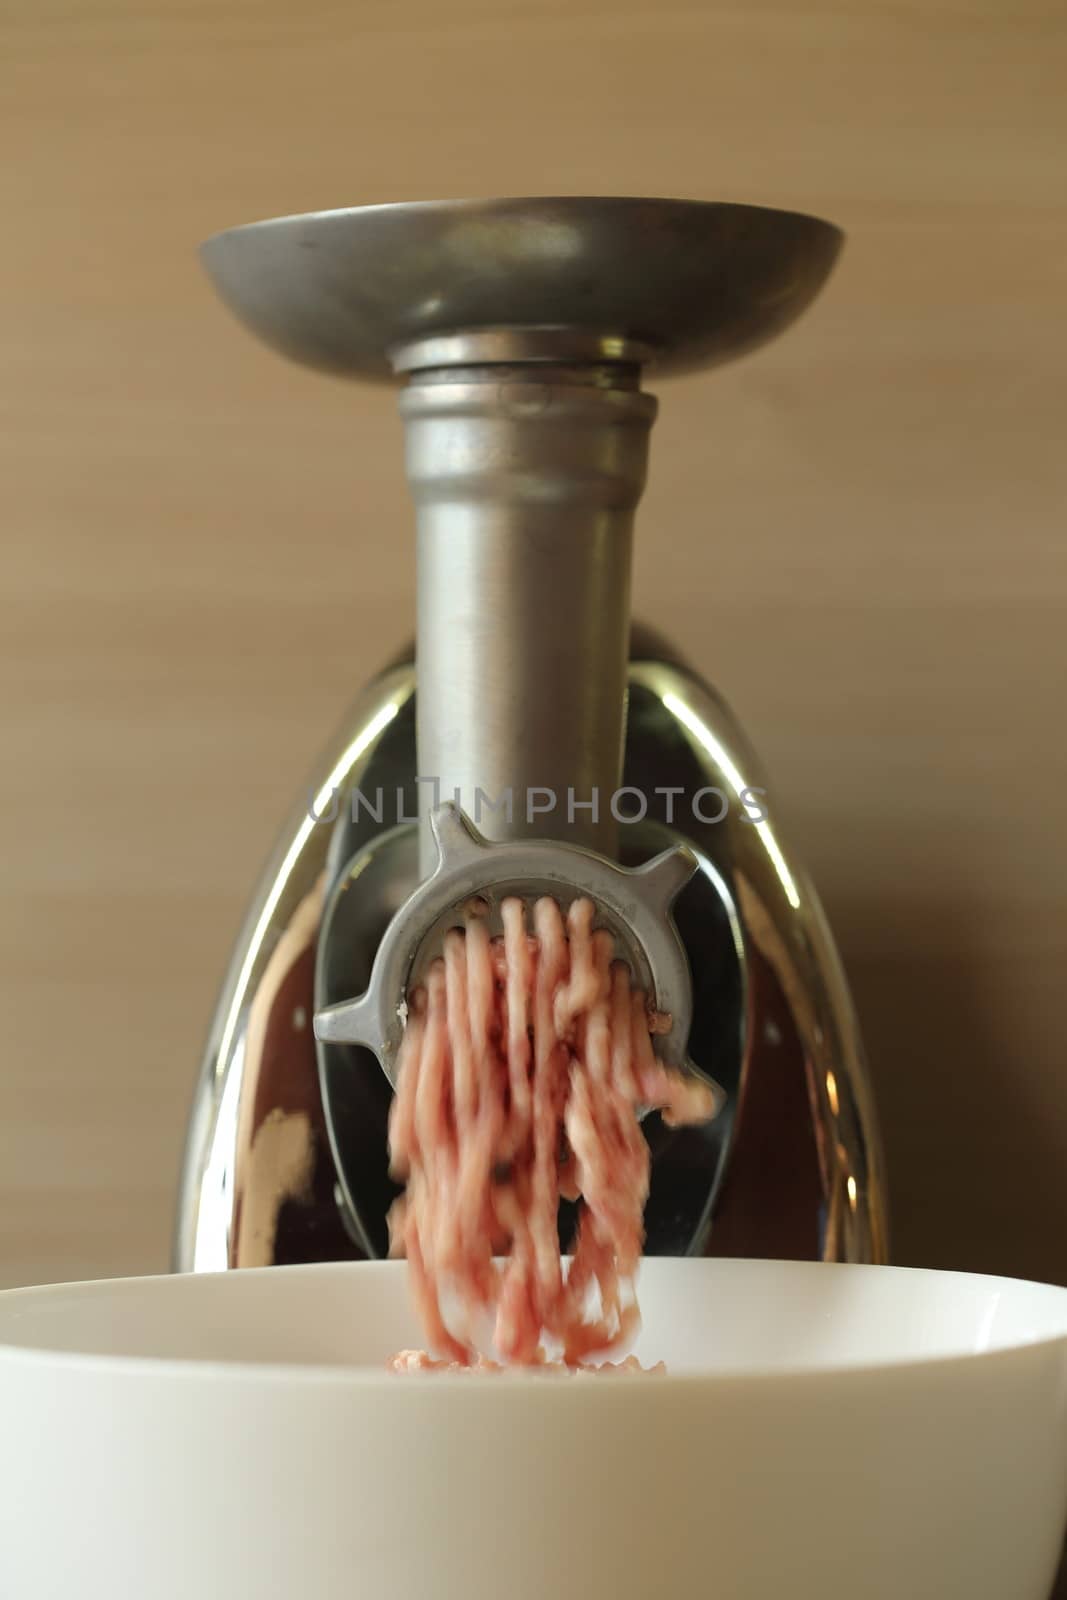 Meat grinder by alexkosev